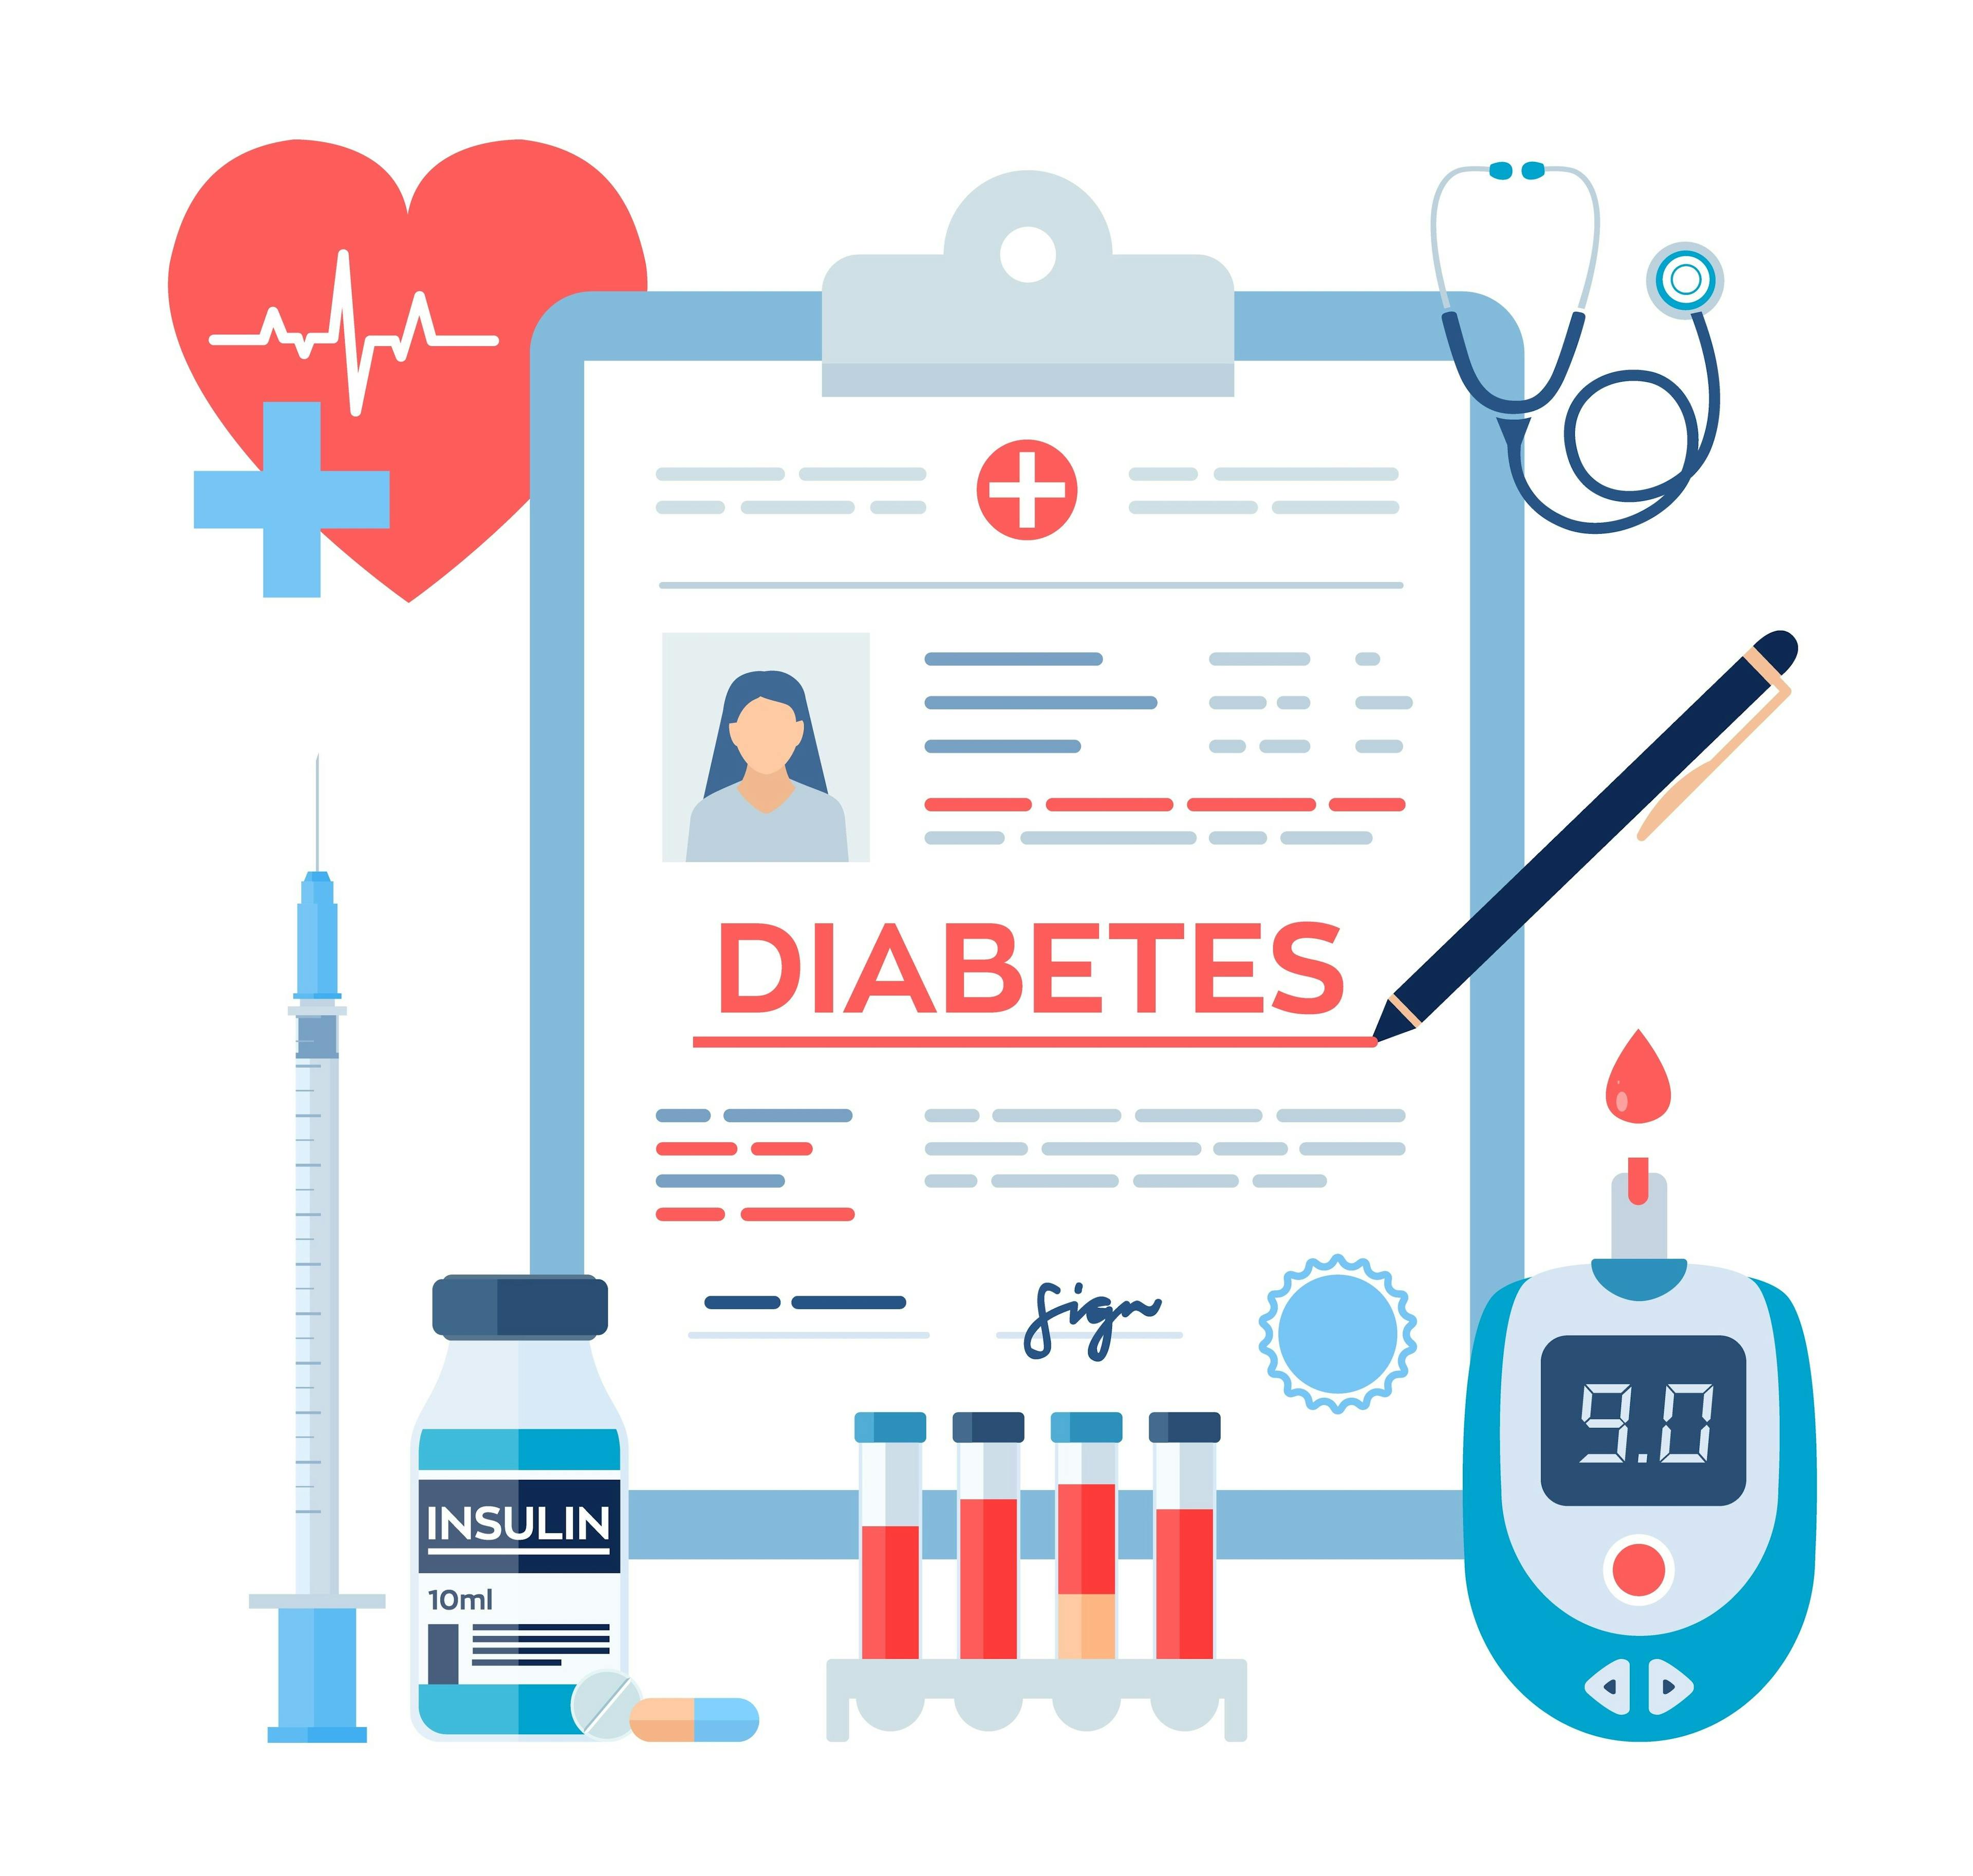 Can a diabetes app improve patient outcomes?